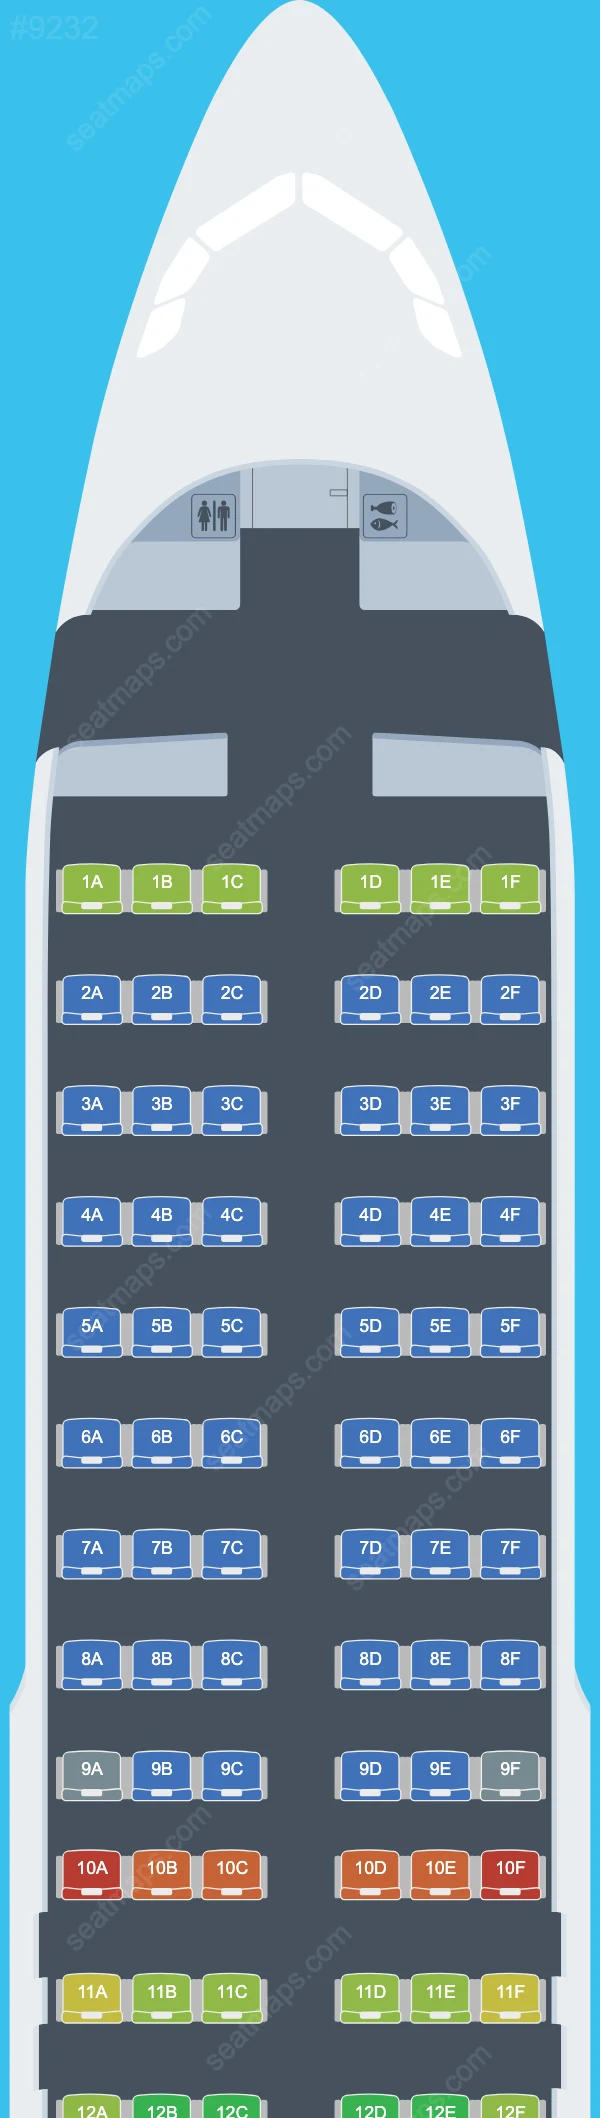 Air Malta Airbus A320 Seat Maps A320-200neo